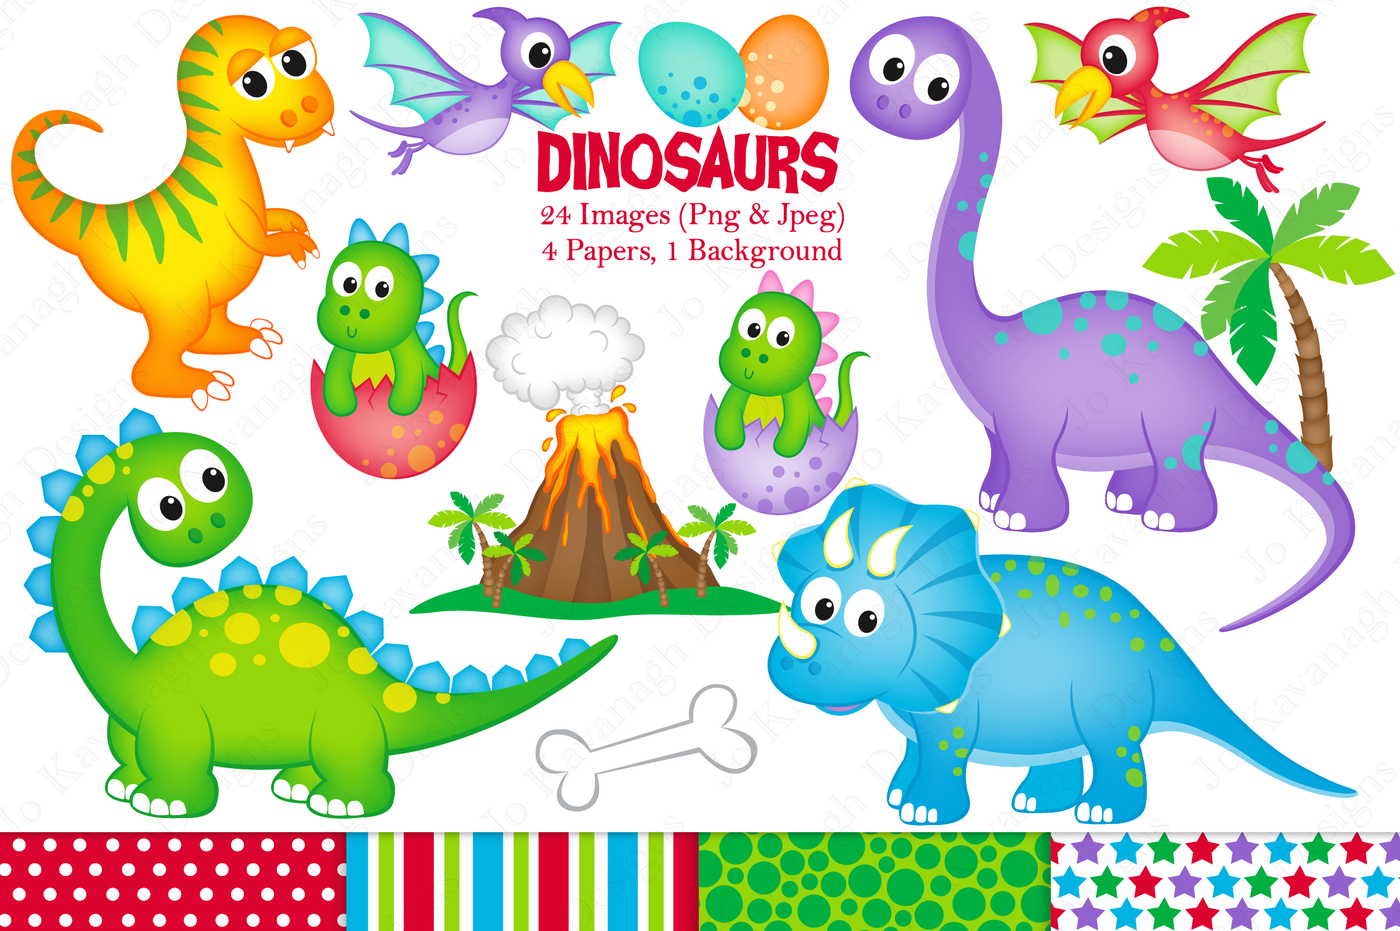 Dinosaur clipart Dinosaur graphics illustrations Cute dinosaurs By